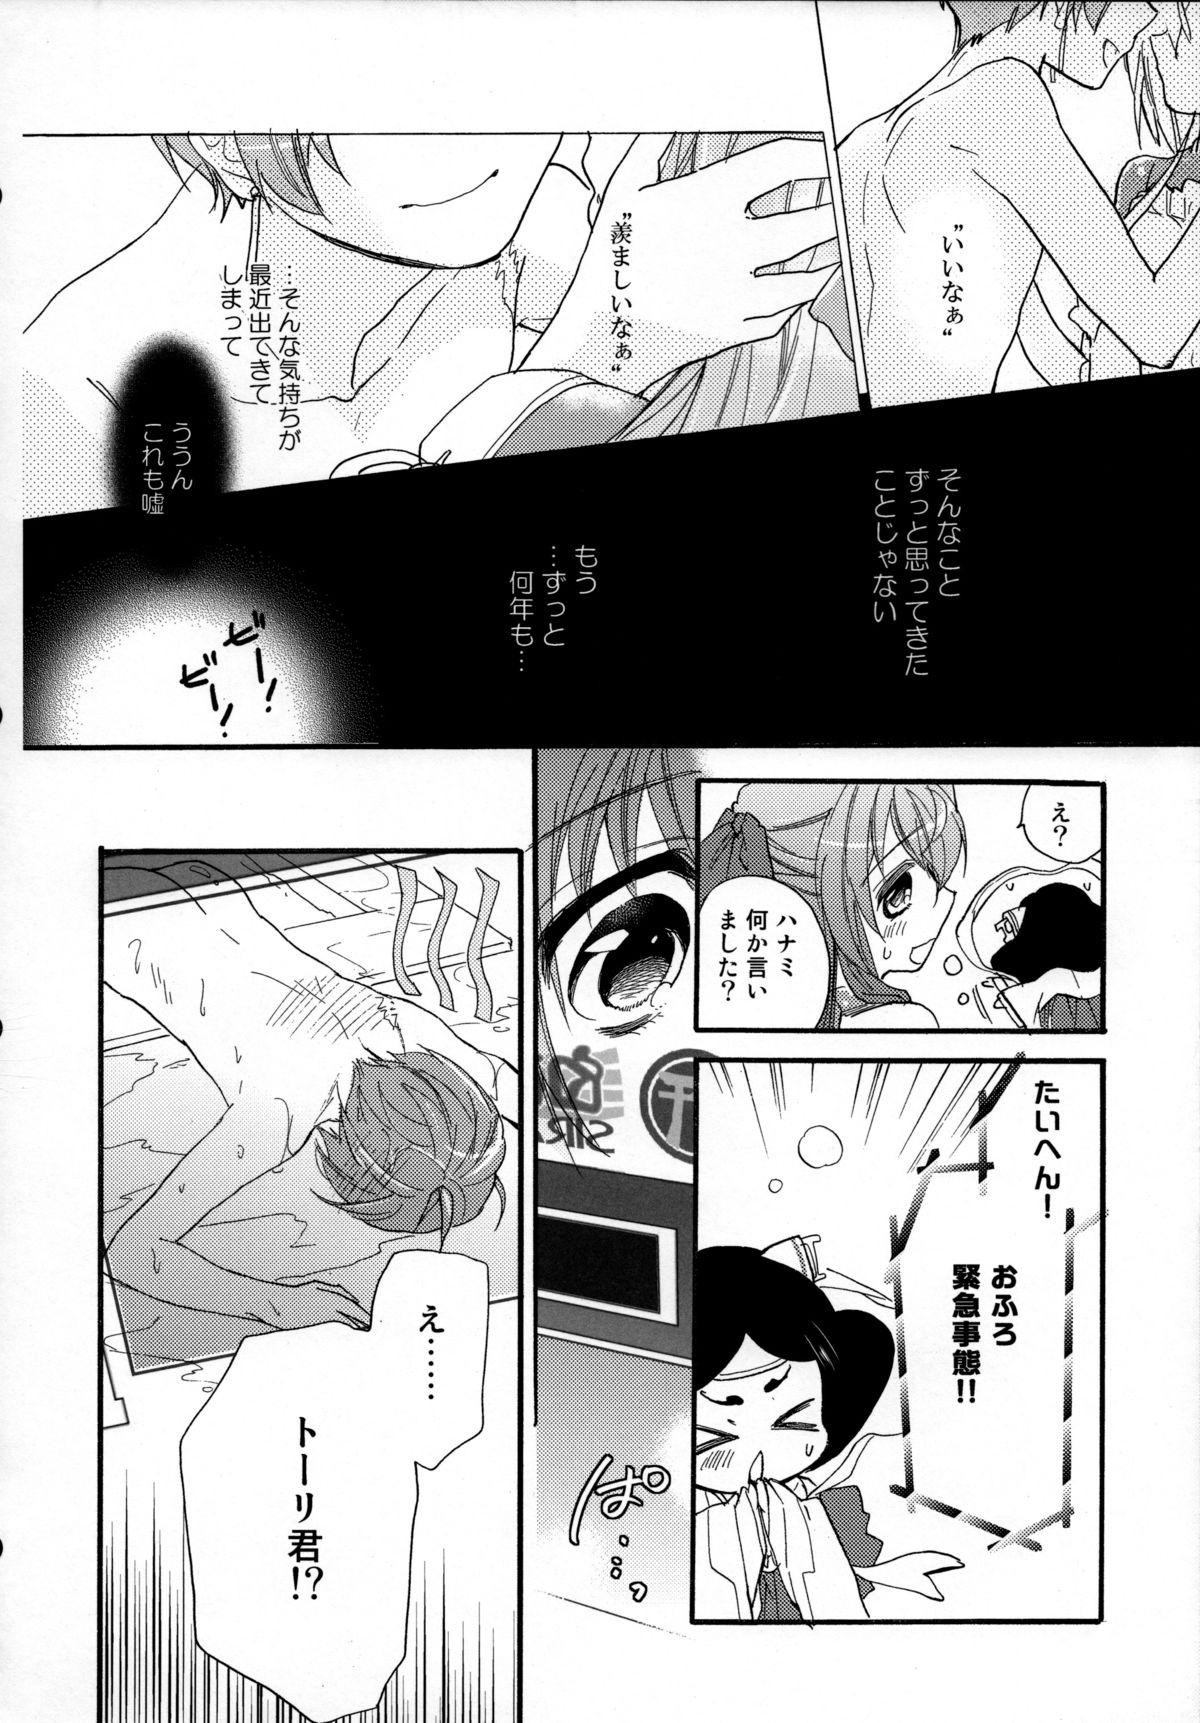 Atm Asama Tomo no Junjou - Kyoukai senjou no horizon Masturbating - Page 11